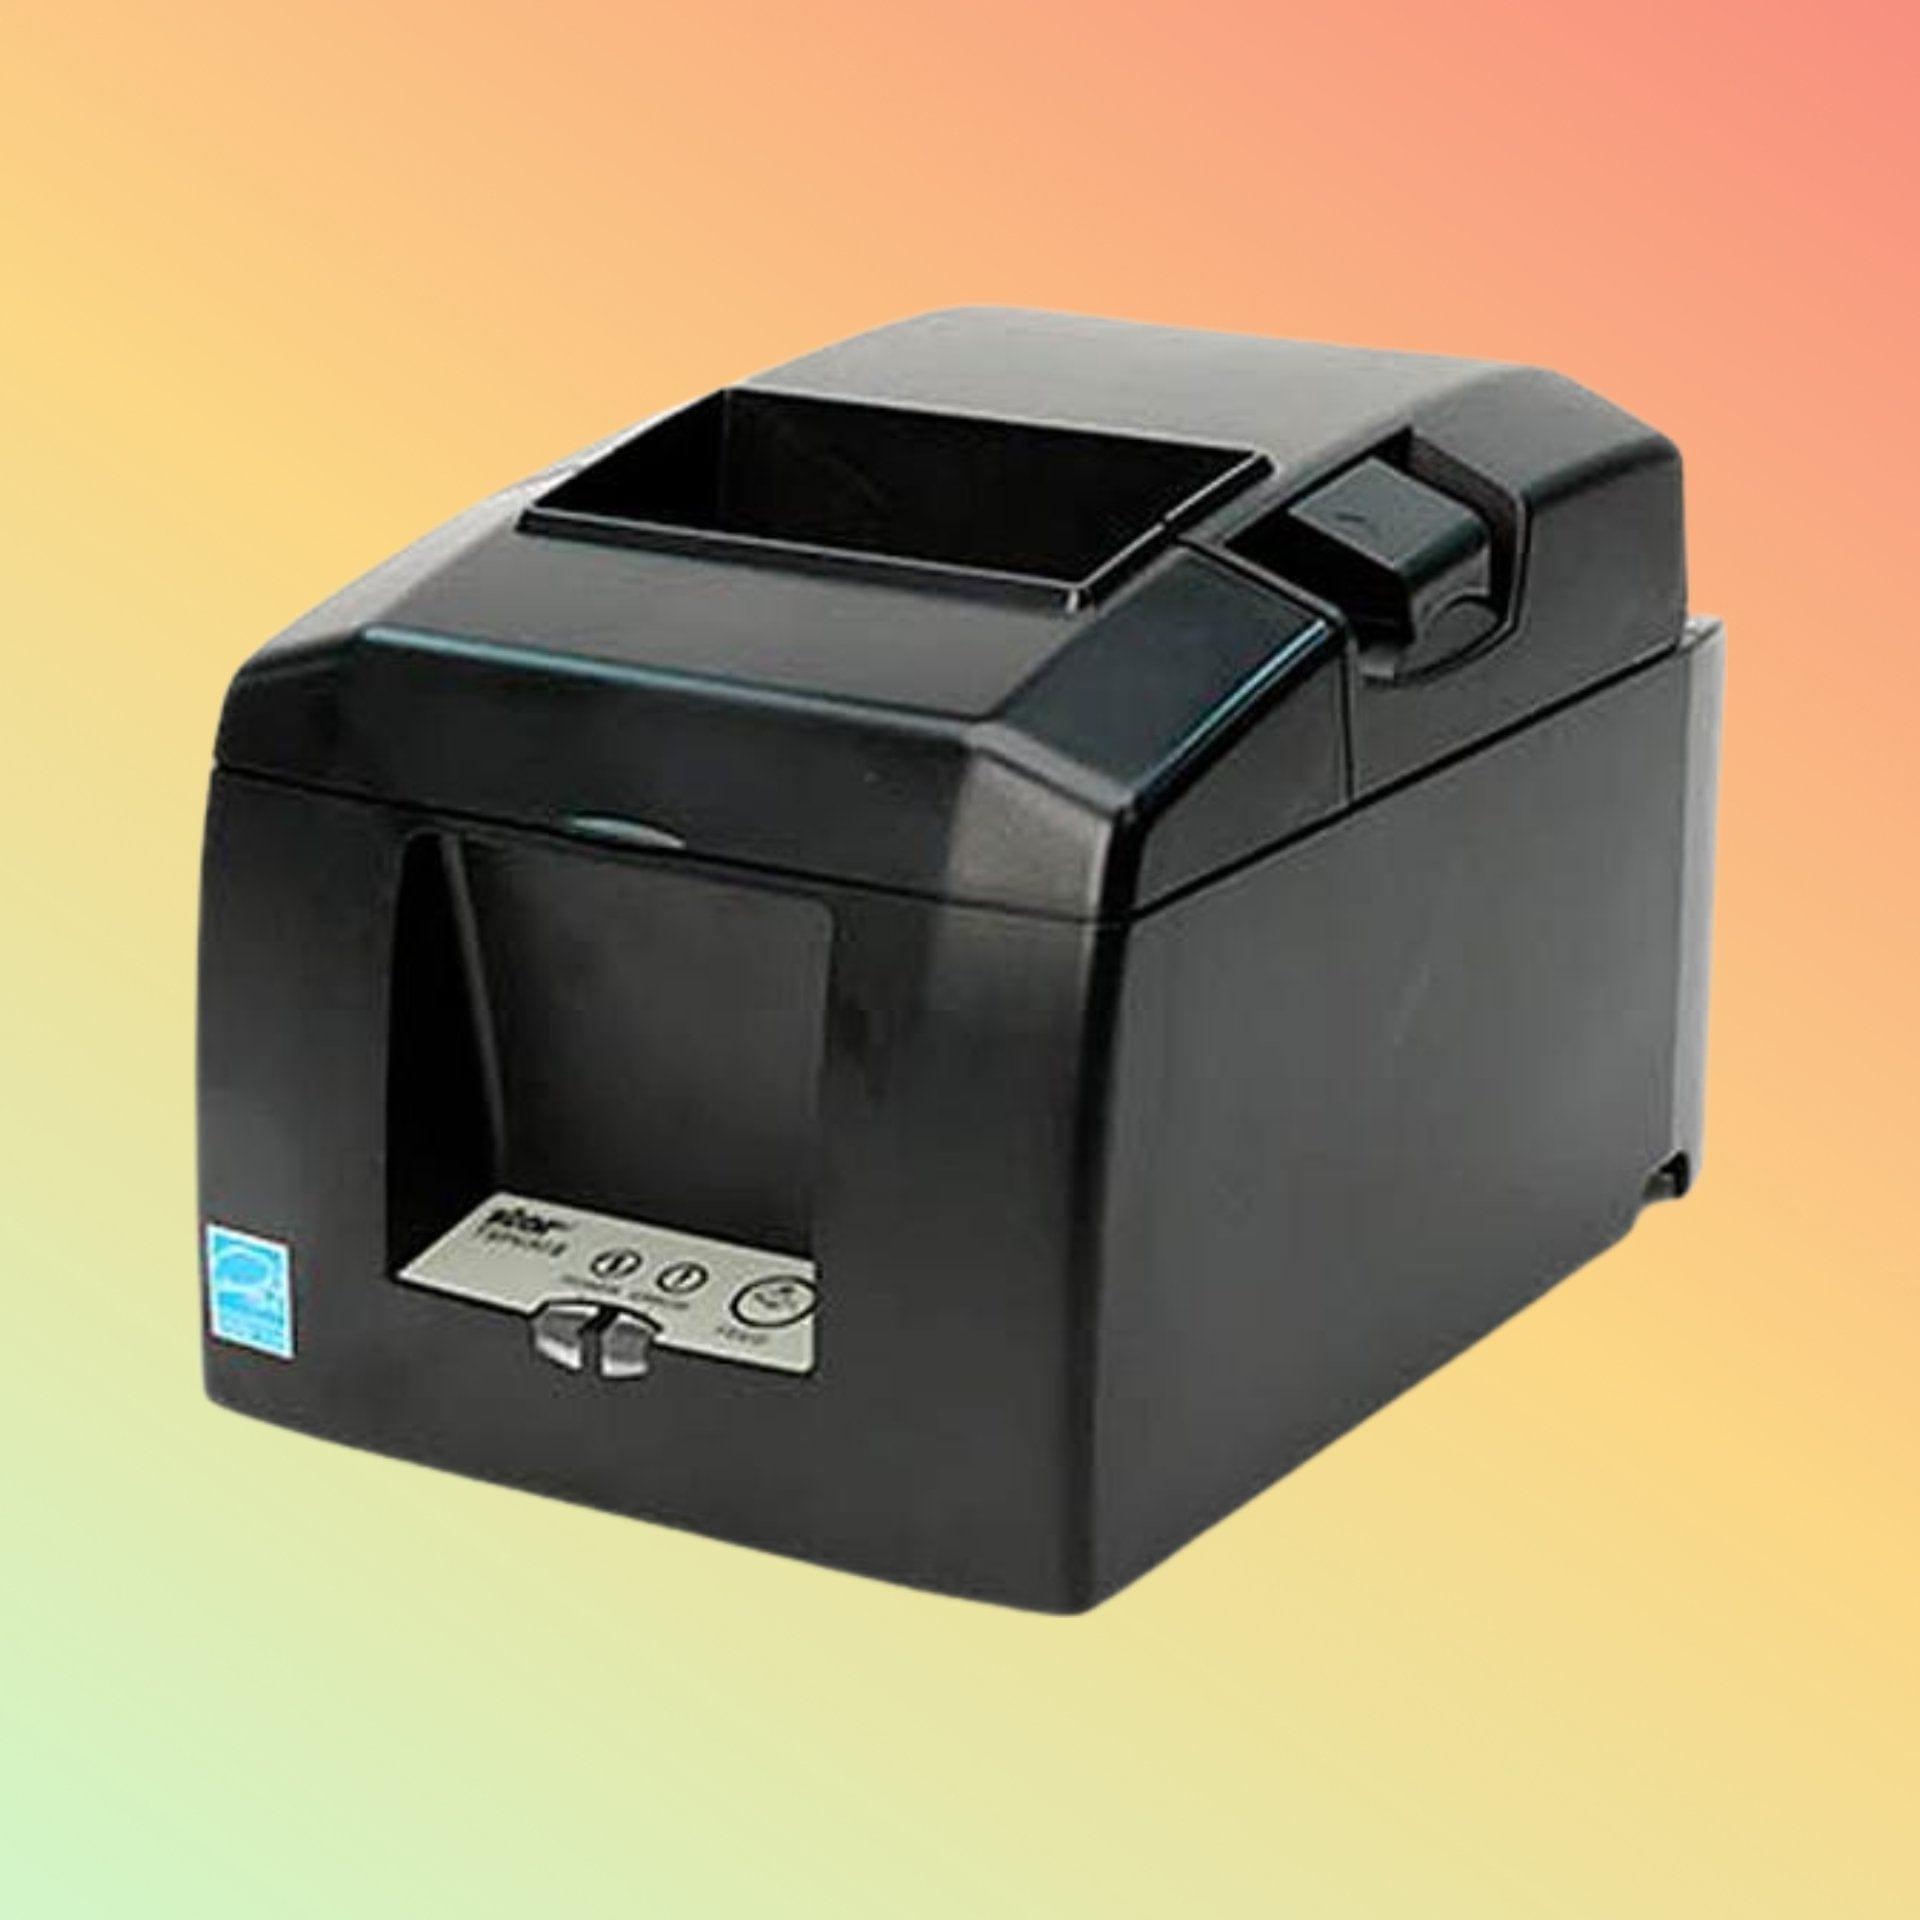 Receipt Printer - Star Micronics TSP654BT - NEOTECH